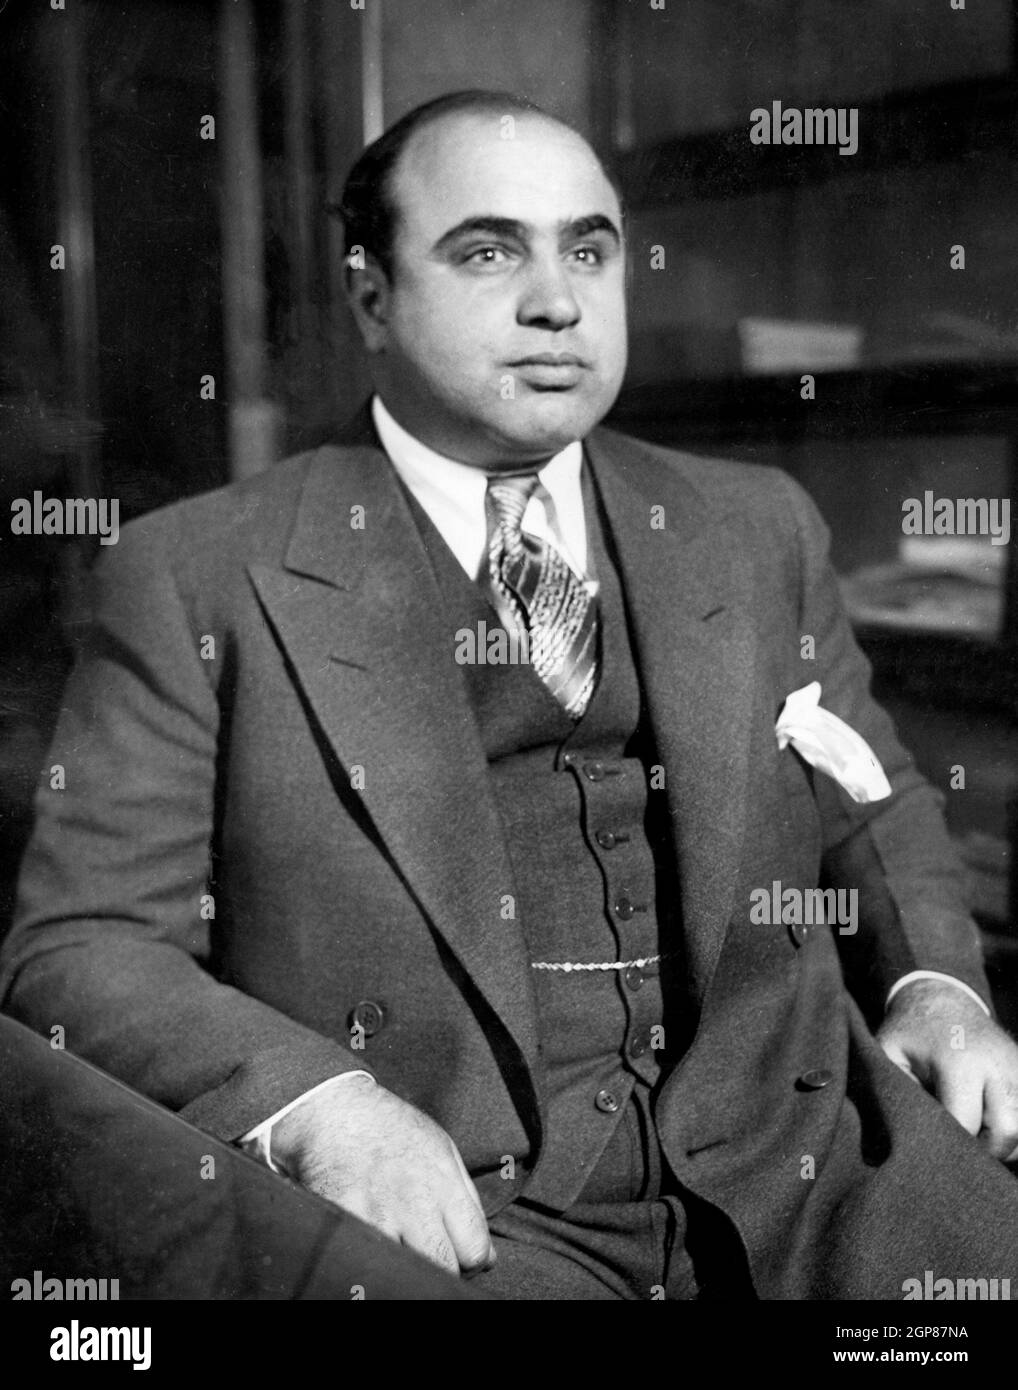 Al Capone, Alphonse Gabriel Capone (1899 – 1947) il gangster americano ottenne notorietà durante l'era di proibizione come co-fondatore e boss del Chicago Outfit. Il suo regno di sette anni come capo criminale finì quando andò in prigione all'età di 33 anni. Al Capone è mostrato qui al Chicago Detective Bureau dopo il suo arresto su una carica vagrancy come Enemy pubblico No. 1 Foto Stock